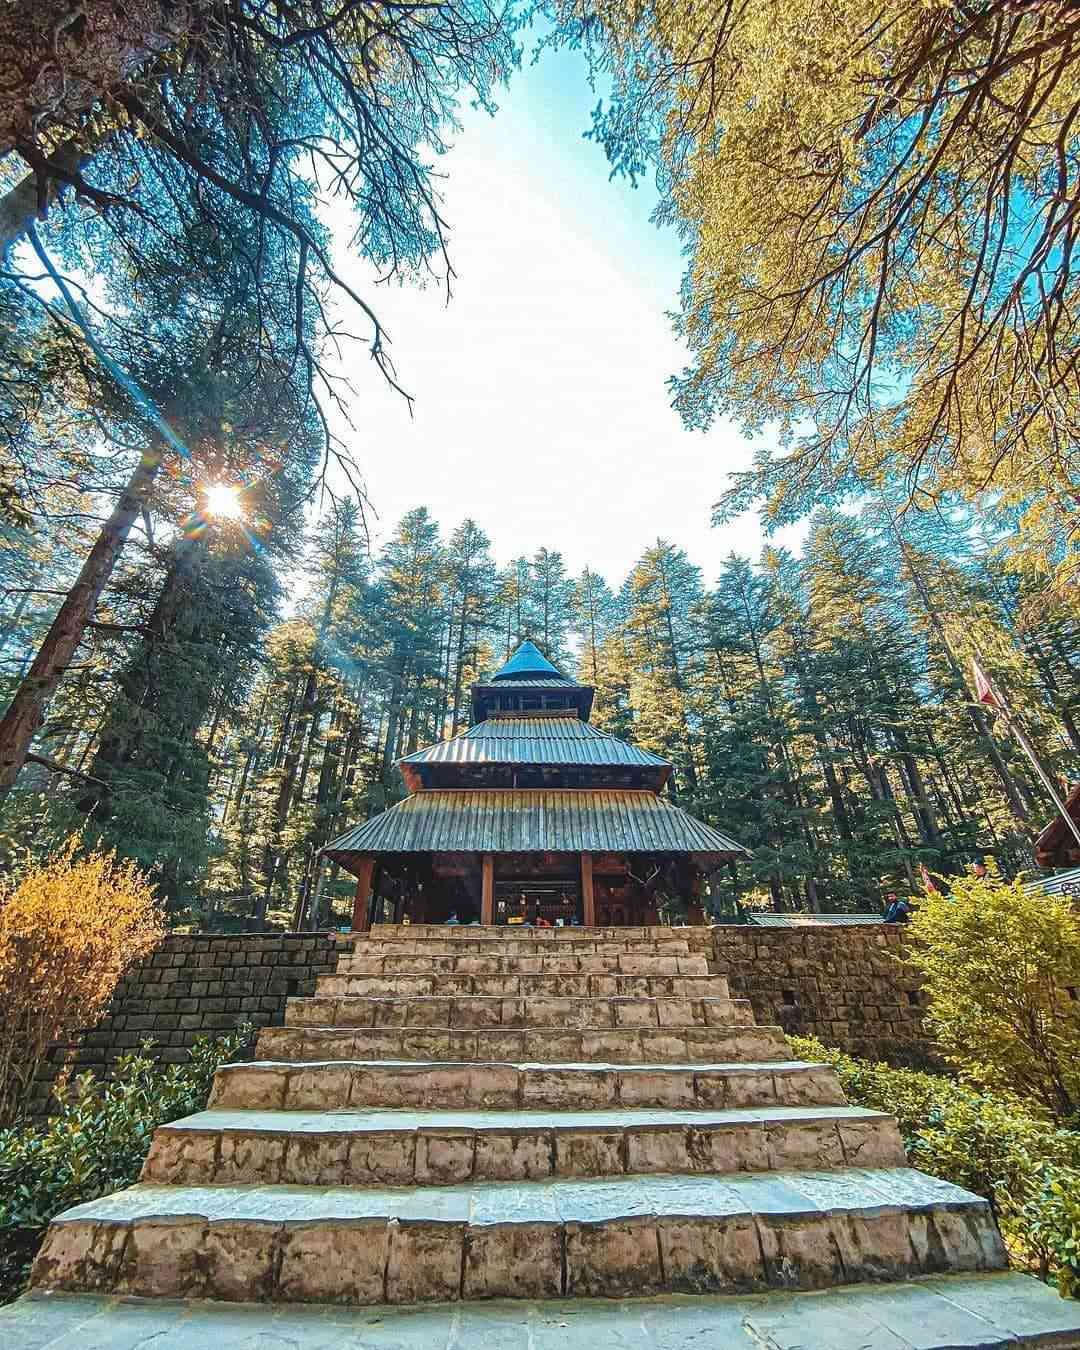 Hadimba Devi Temple